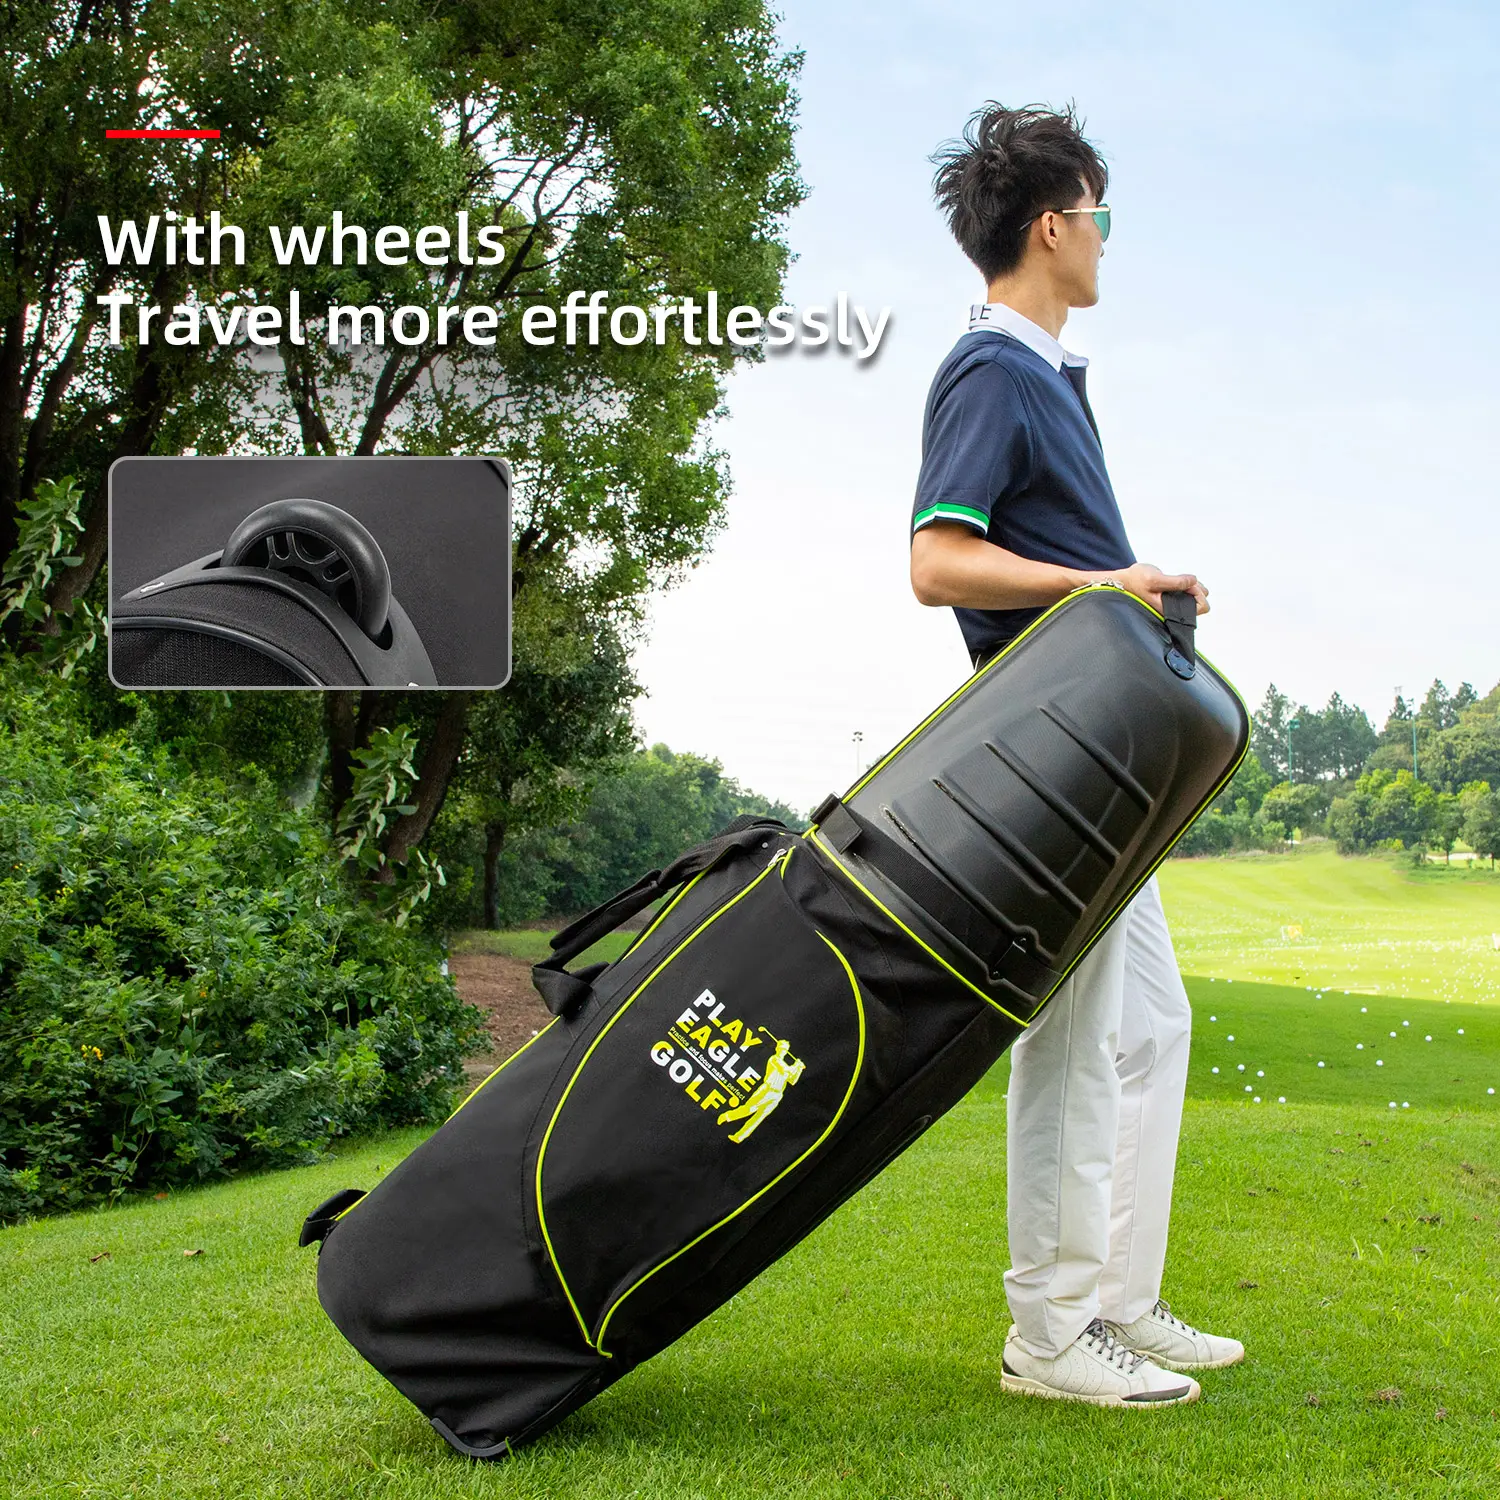 PLAYEAGLE एबीएस हार्ड प्रकरण टिकाऊ गोल्फ बैग कवर पहिया के साथ सबसे गोल्फ बैग गोल्फ यात्रा बैग फिट बैठता है